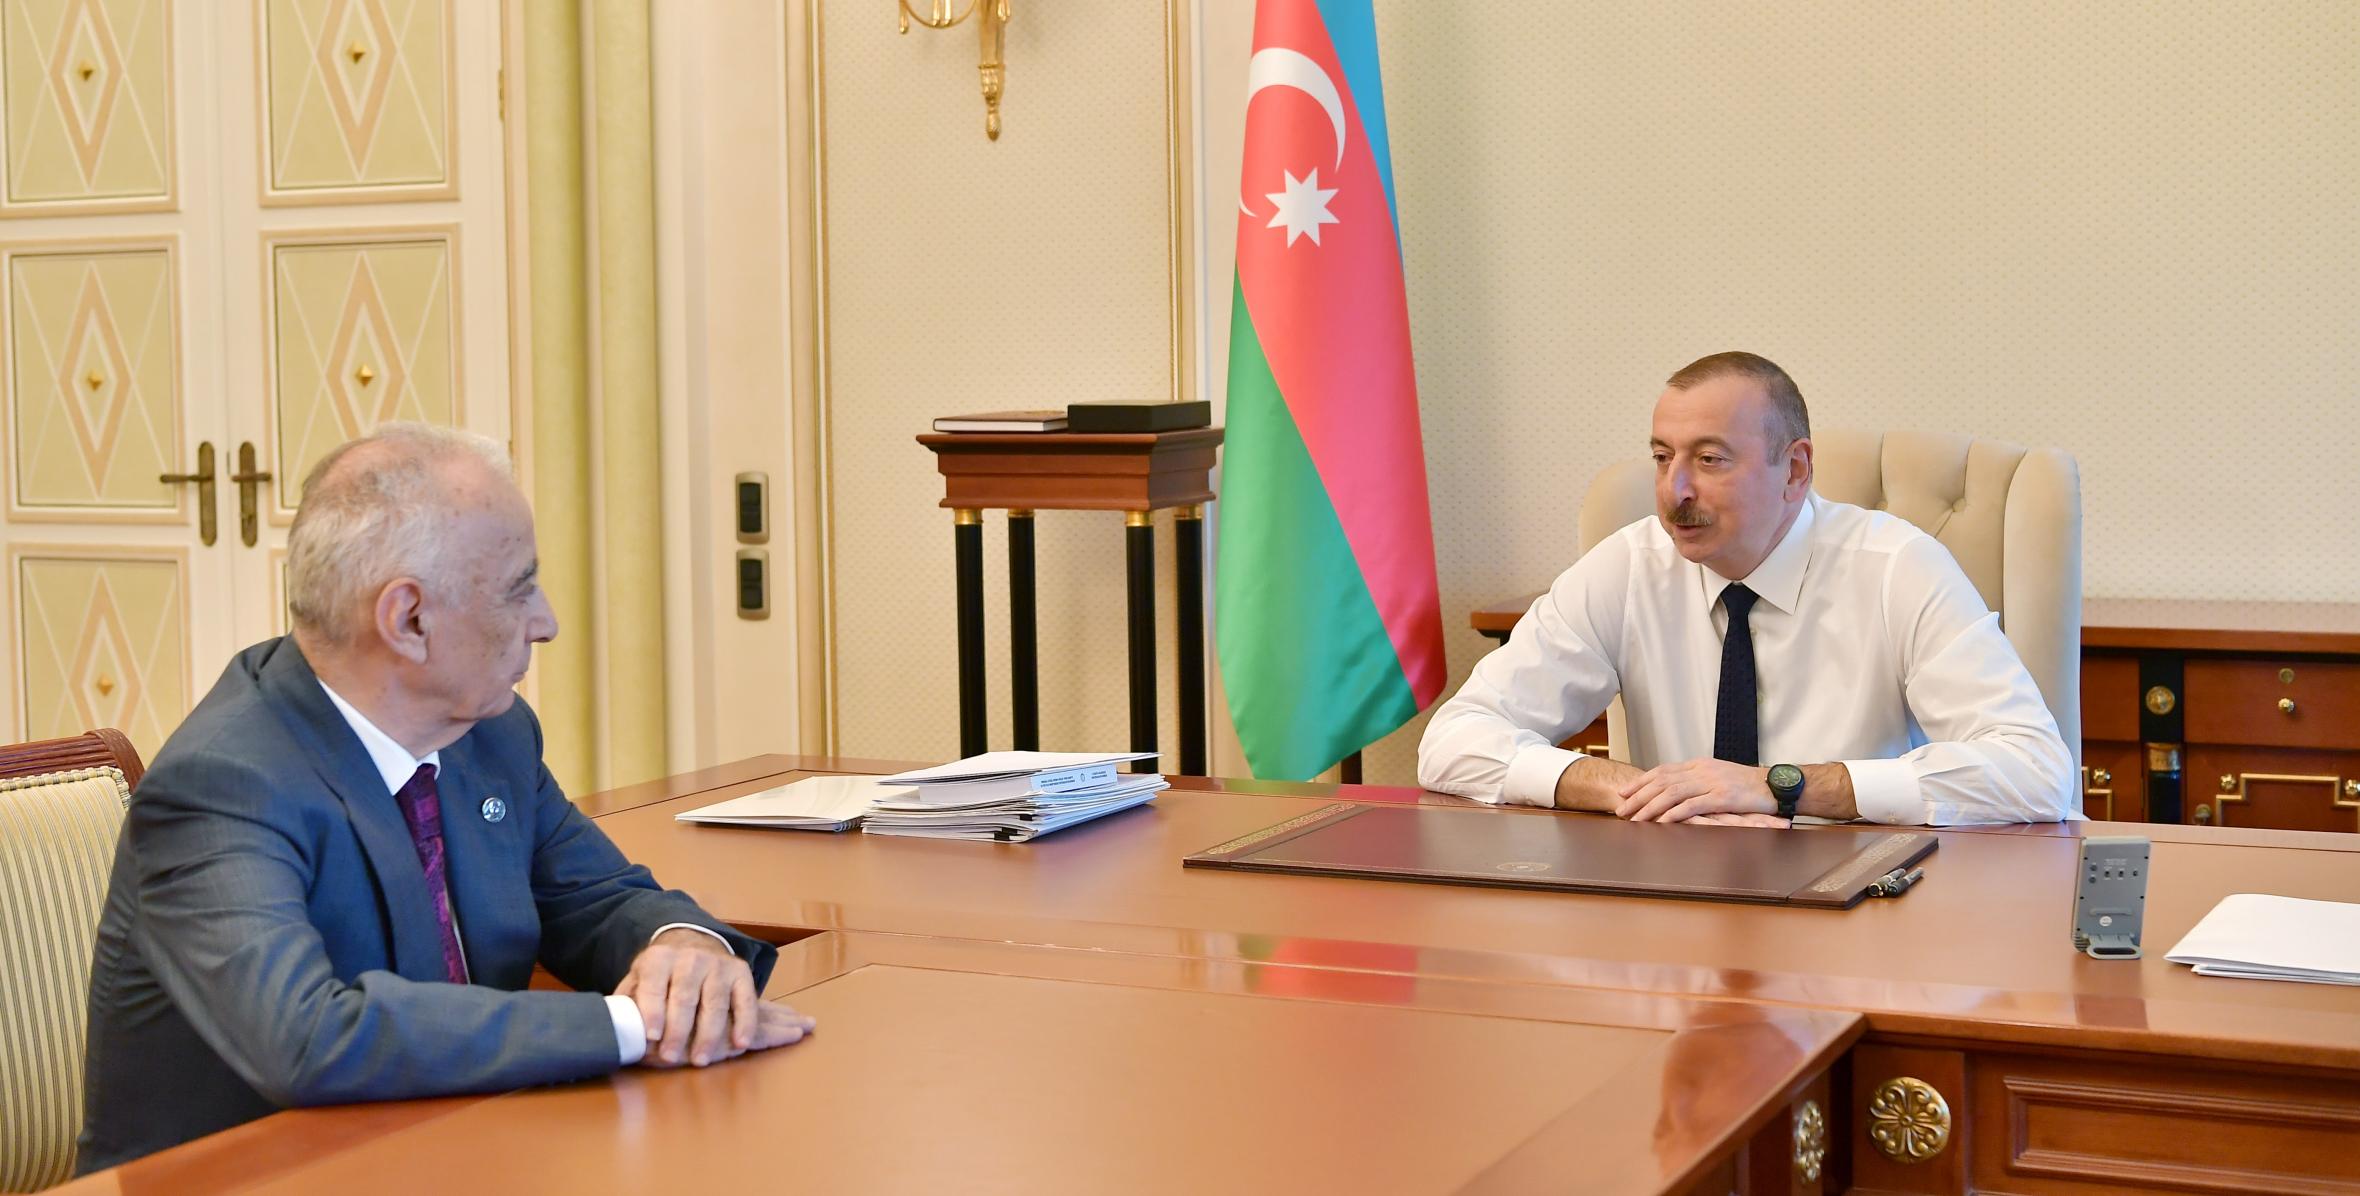 Ильхам Алиев принял заместителя премьер-министра Гаджибалу Абуталыбова в связи с поданным им заявлением об освобождении от должности